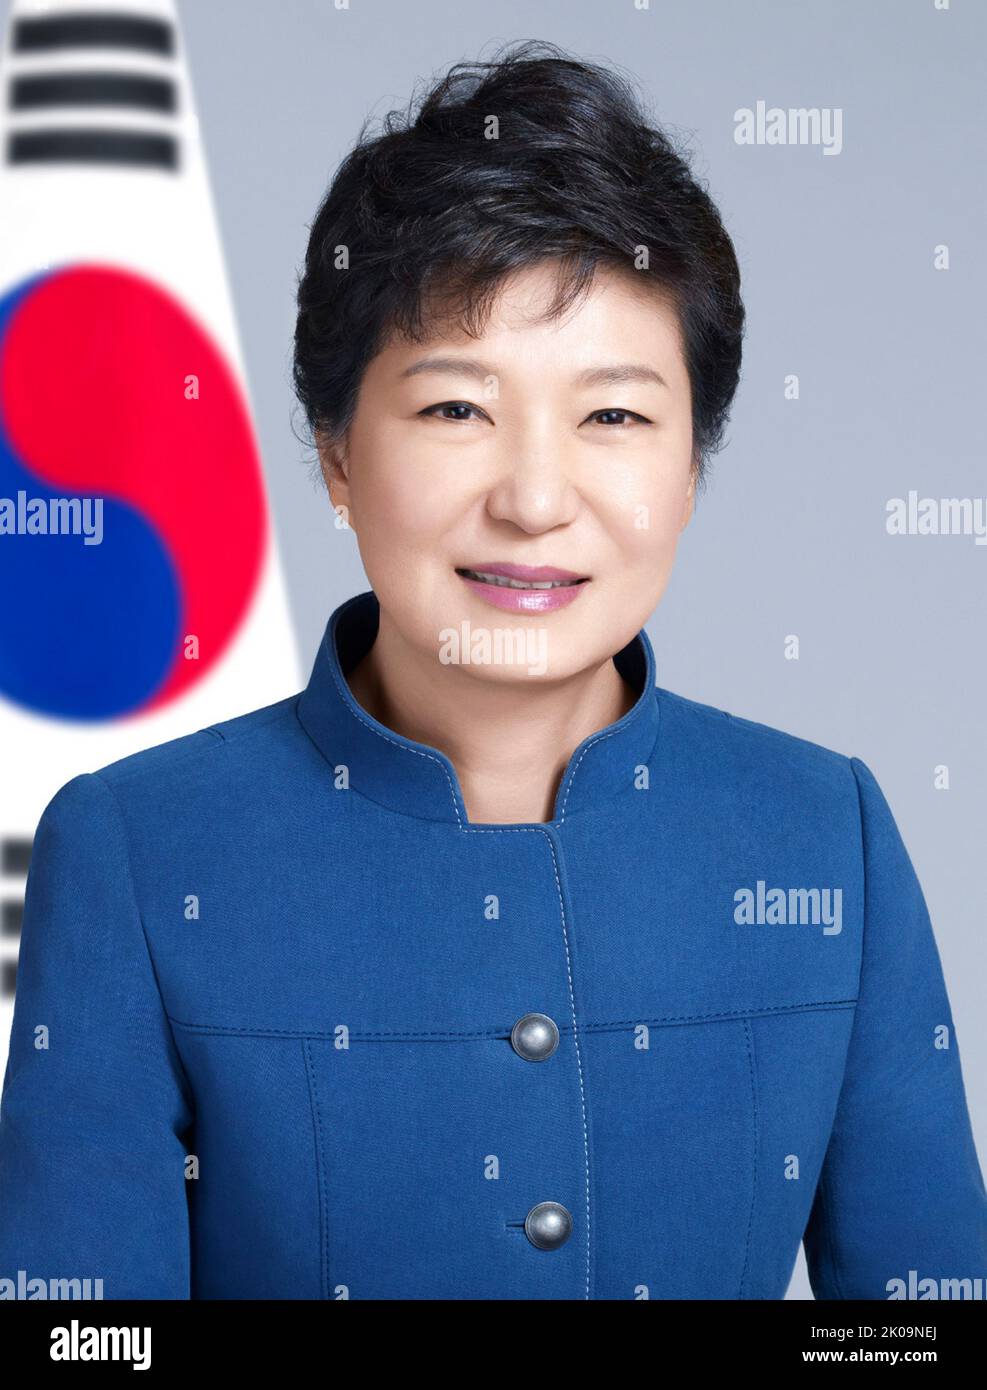 Park Geun-hye (geboren am 2. Februar 1952) ist eine ehemalige südkoreanische Politikerin, die von 2013 bis 2017 als Präsidentin Südkoreas im Jahr 11. fungierte, als sie wegen Korruptionsvorwürfen angeklagt und ein Jahr später verurteilt wurde. Stockfoto